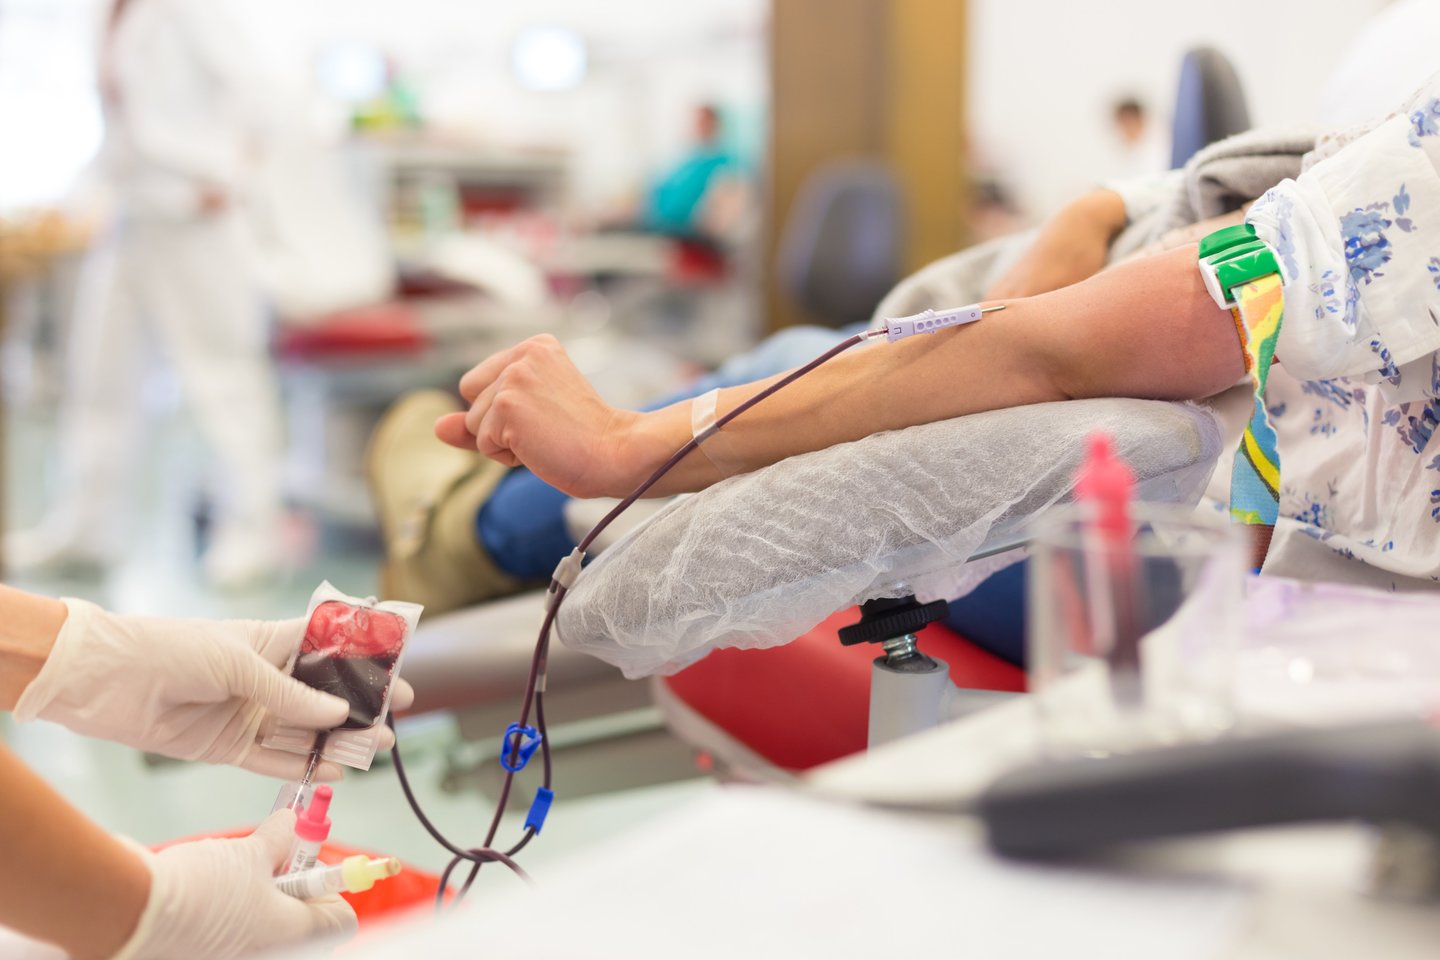 Kaulų čiulpų donorais gali tapti tik ne vyresni kaip 35 metų asmenys, vyresni taip pat raginami dovanoti kraujo.<br>123rf nuotr.